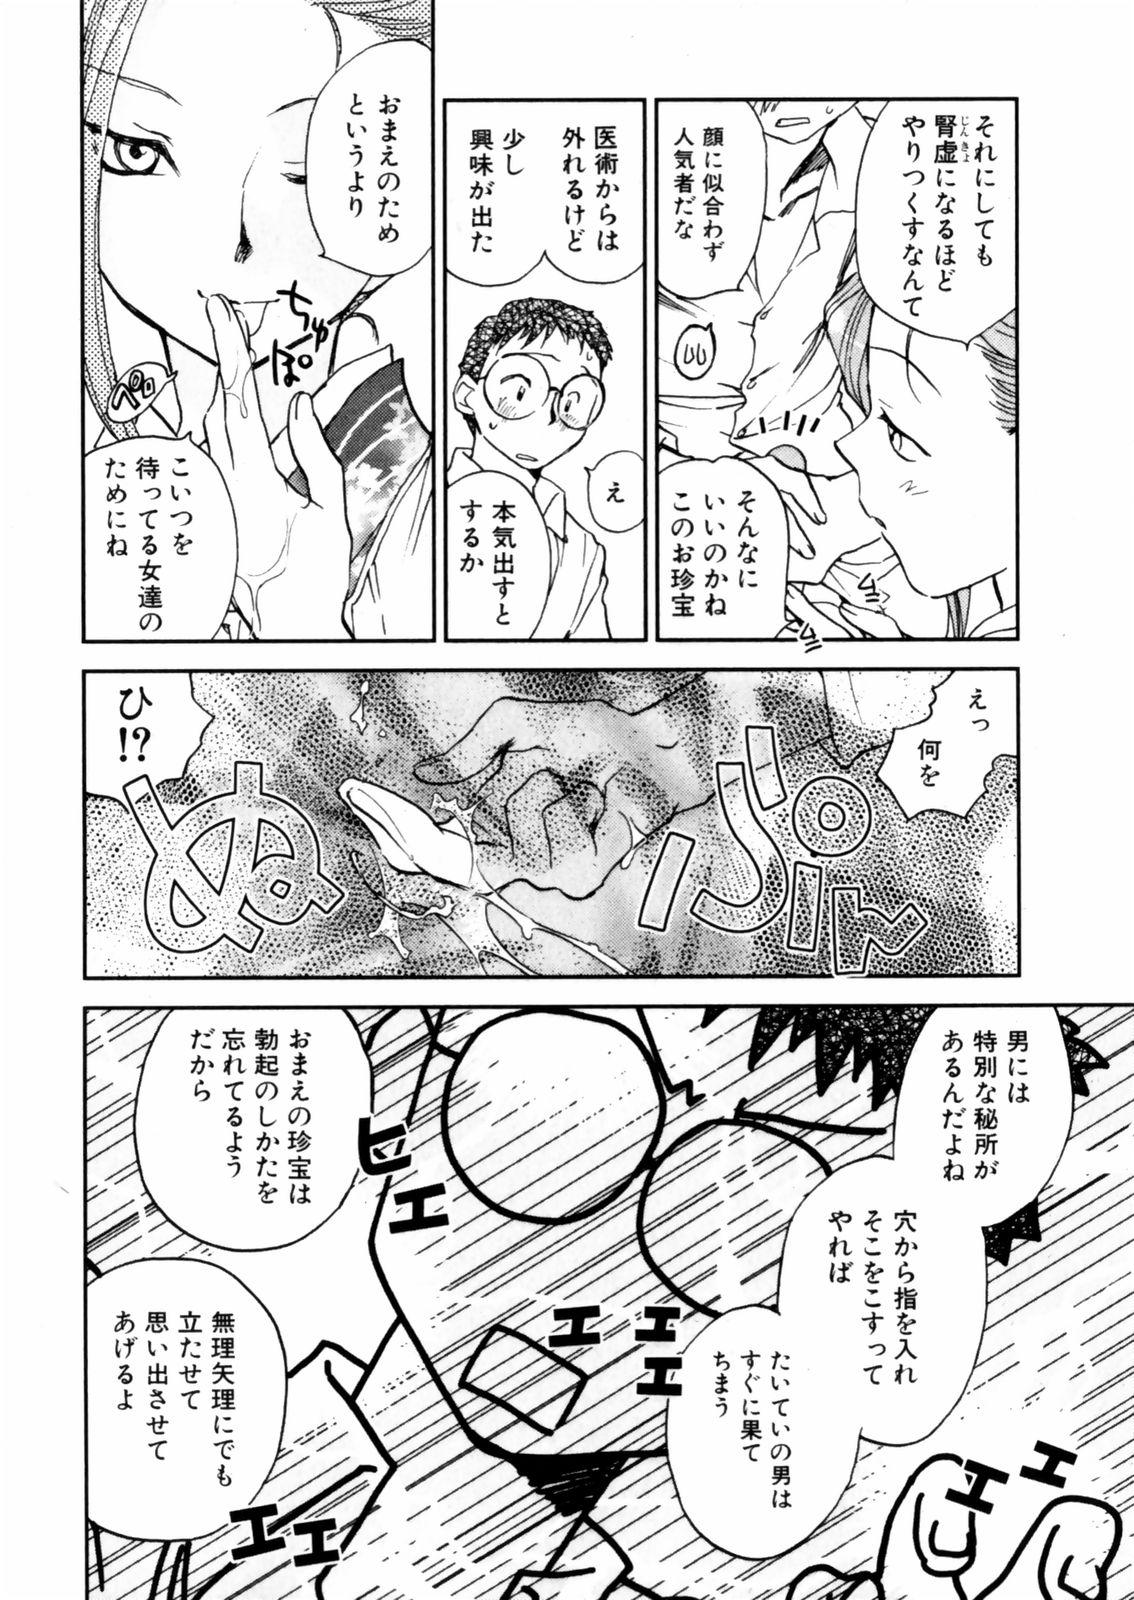 [Okano Ahiru] Hanasake ! Otome Juku (Otome Private Tutoring School) Vol.2 31